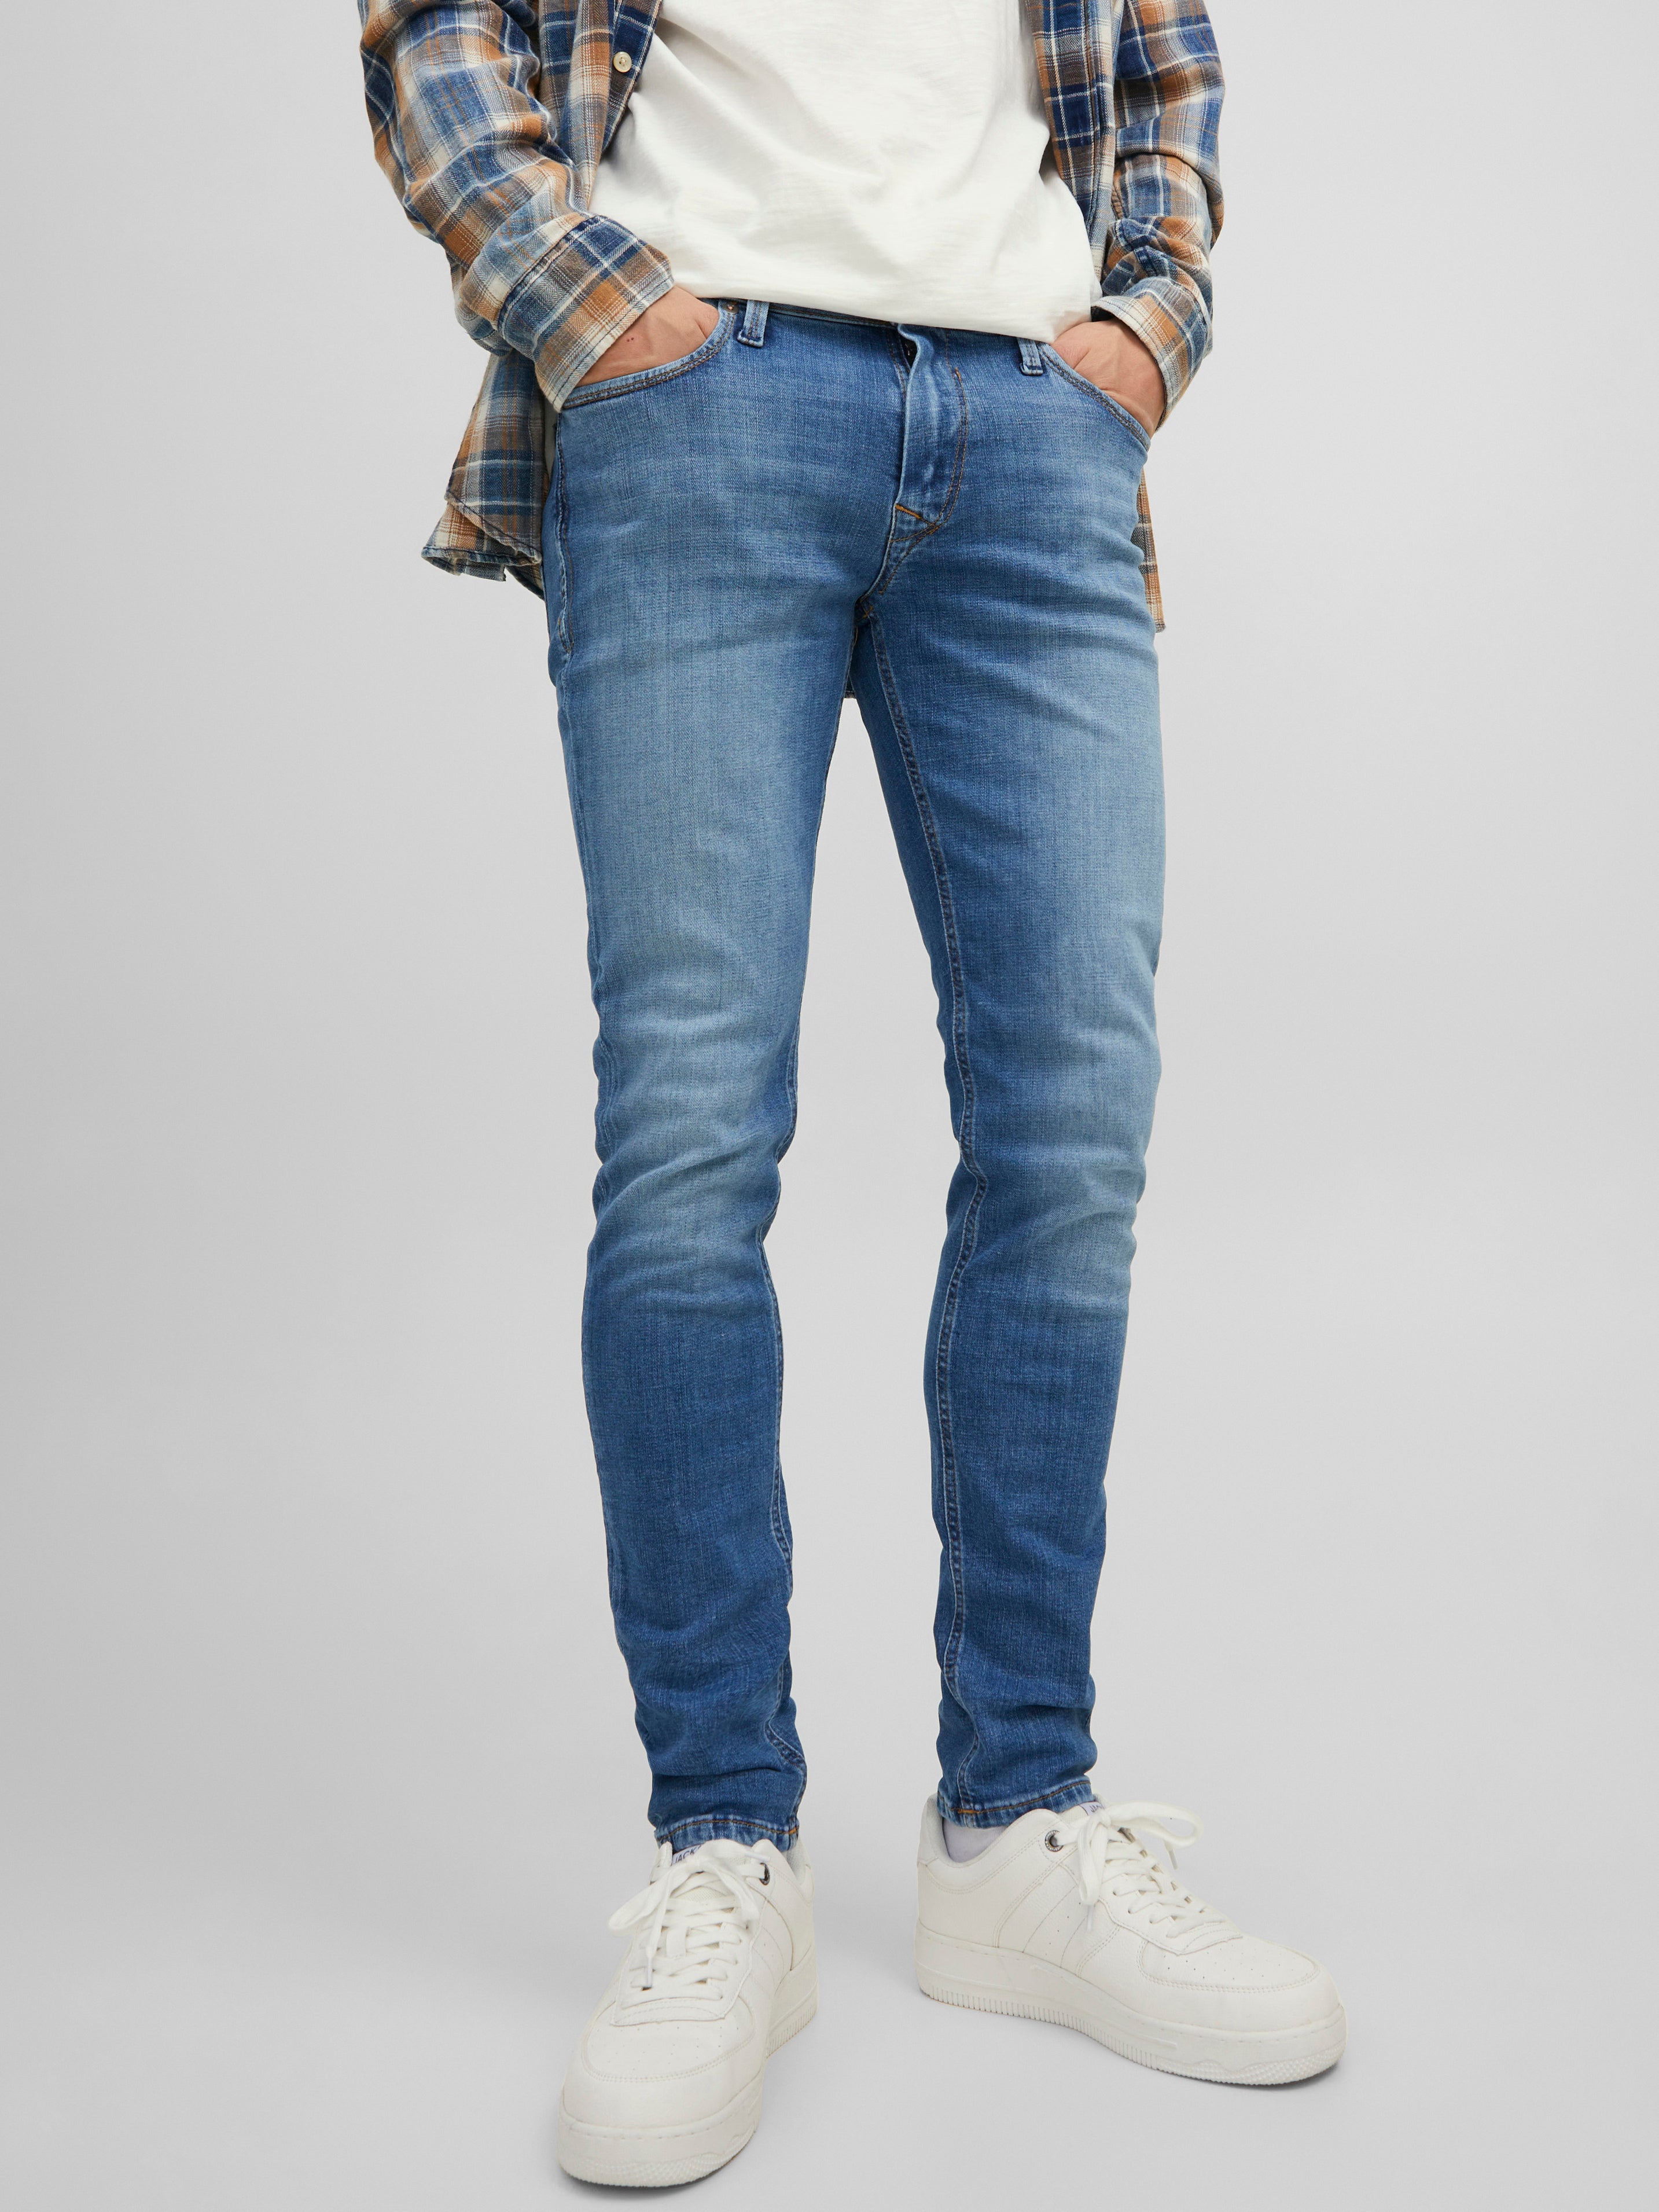 MODA UOMO Jeans Consumato Blu W32/L32 Jack & Jones Jeggings & Skinny & Slim sconto 51% 